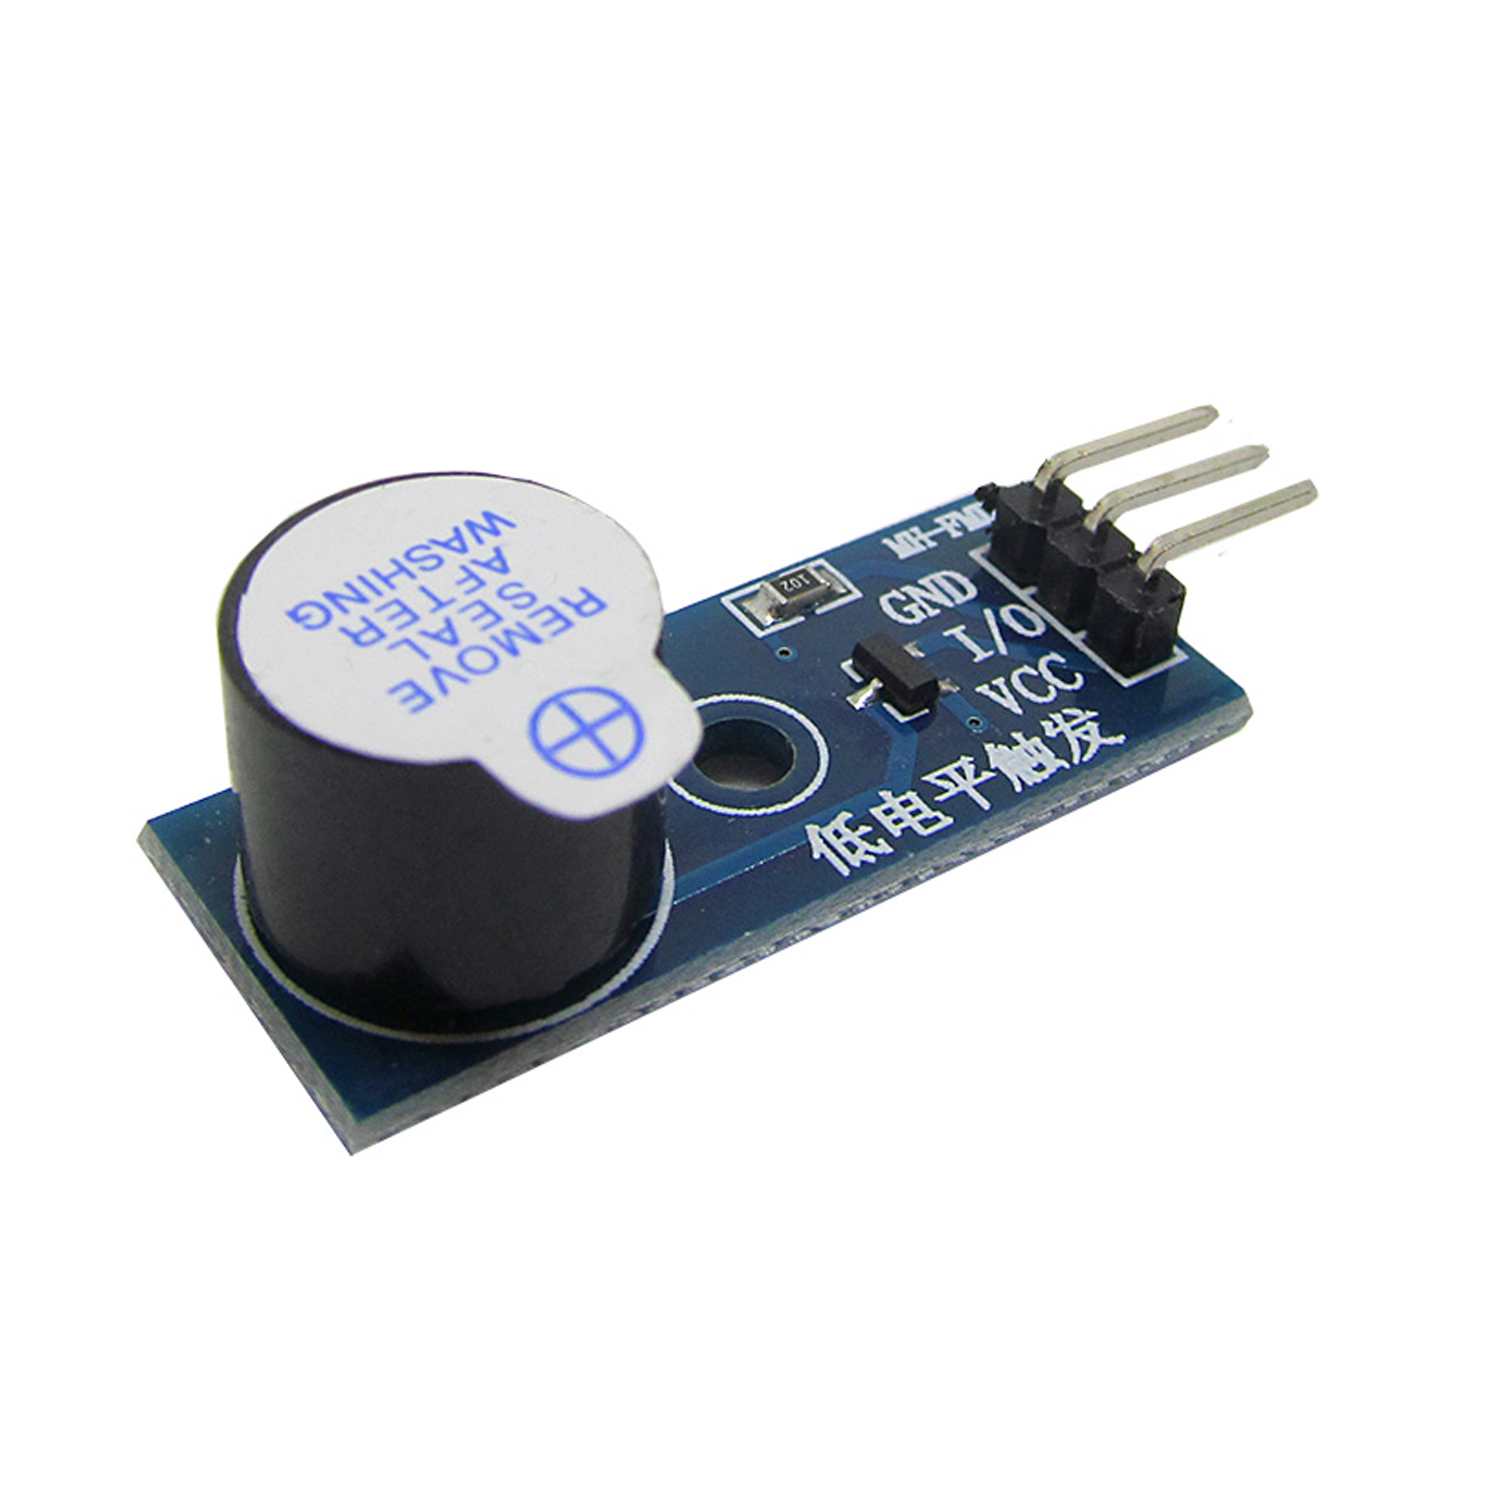 Модуль звука зуммер активный с динамиком (buzzer) для Arduino, фото